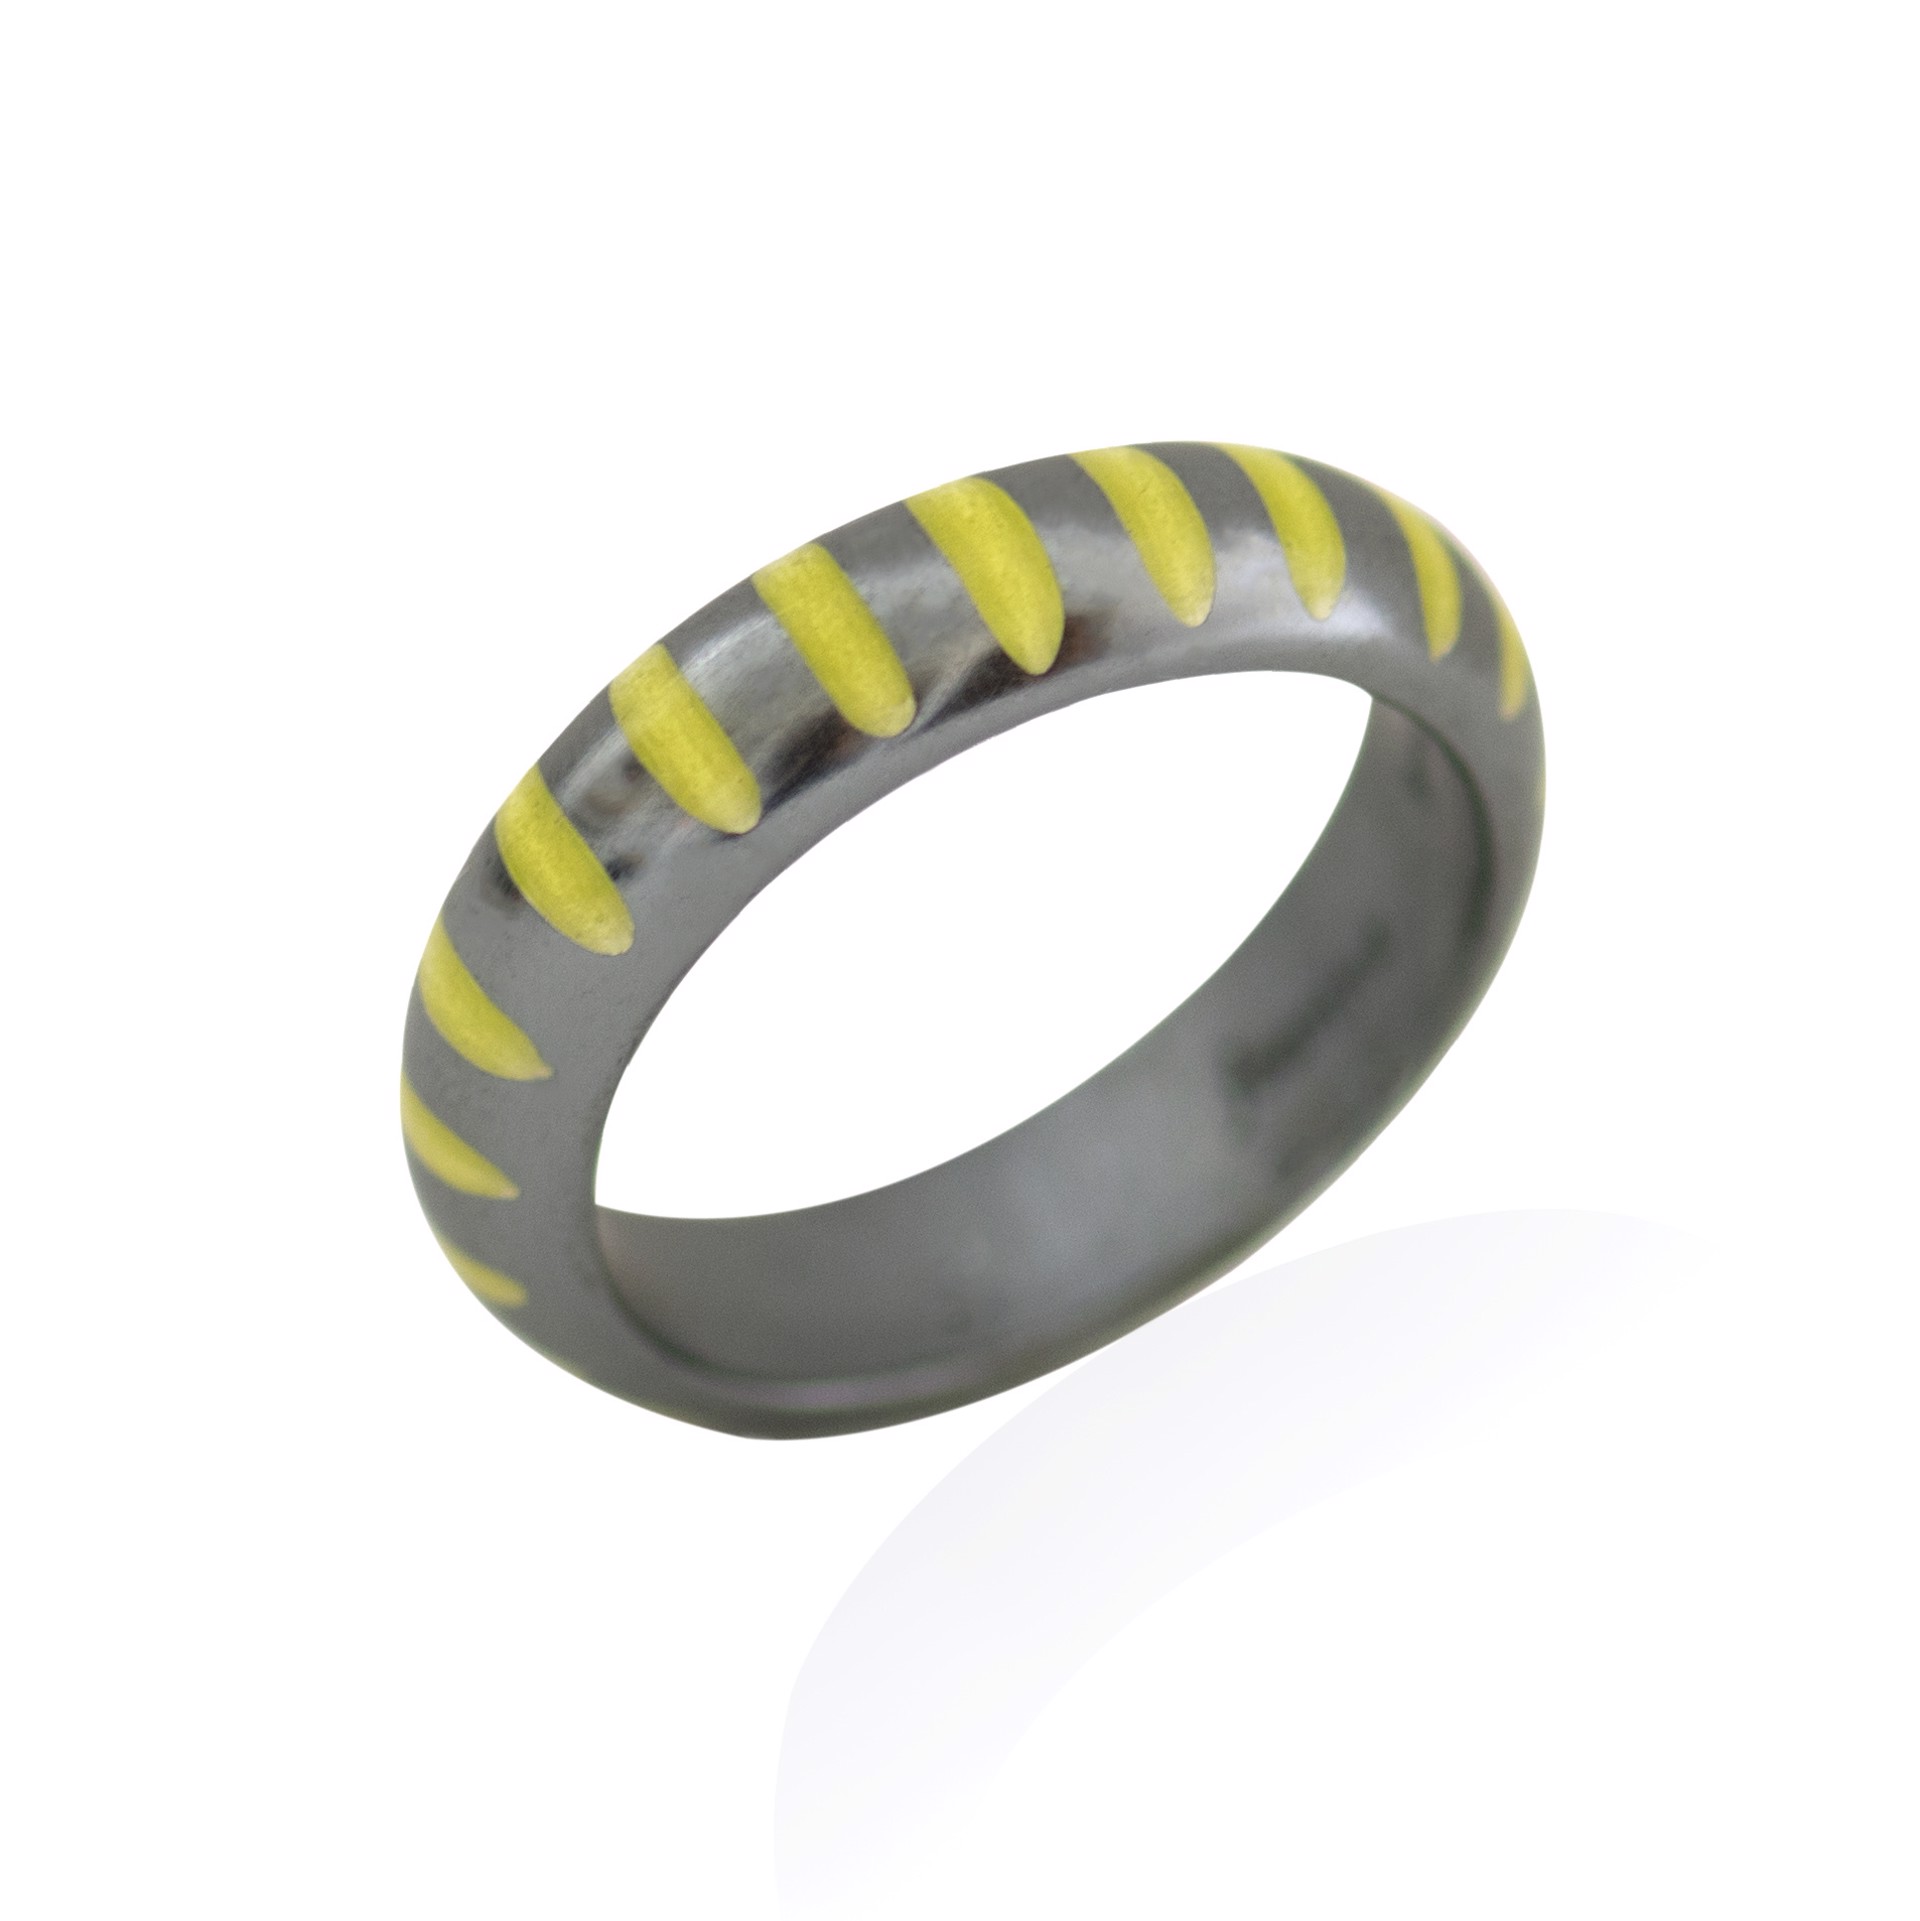 Vertical Stripe Enamel Ring (size 7) by Joanna Nealey